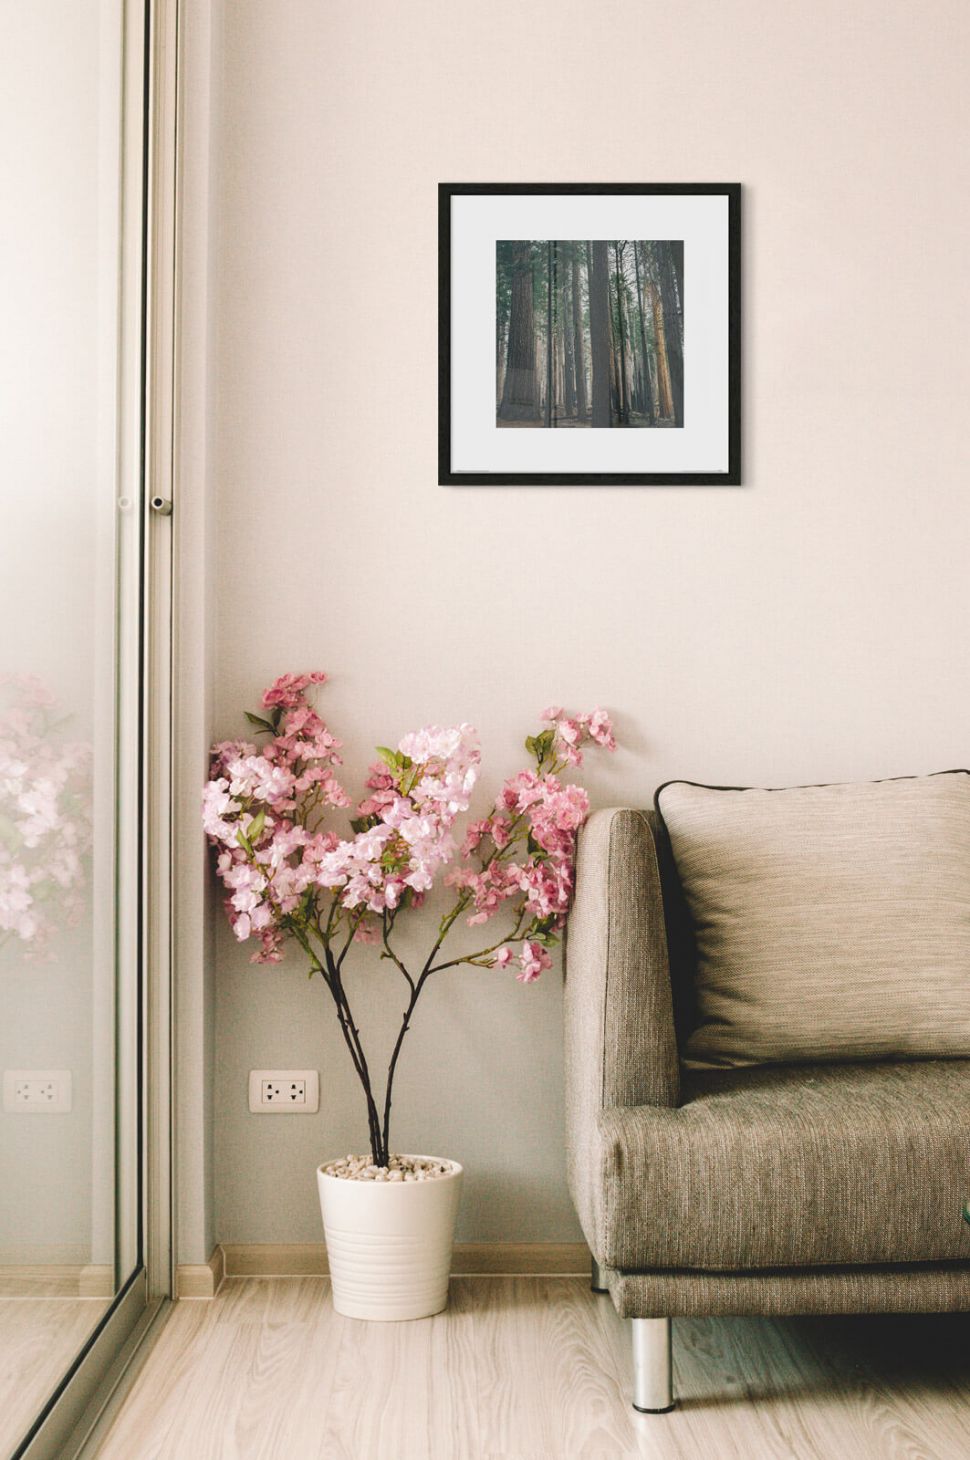 reprodukcja Leśny zagajnik w salonie nad różowym kwiatem